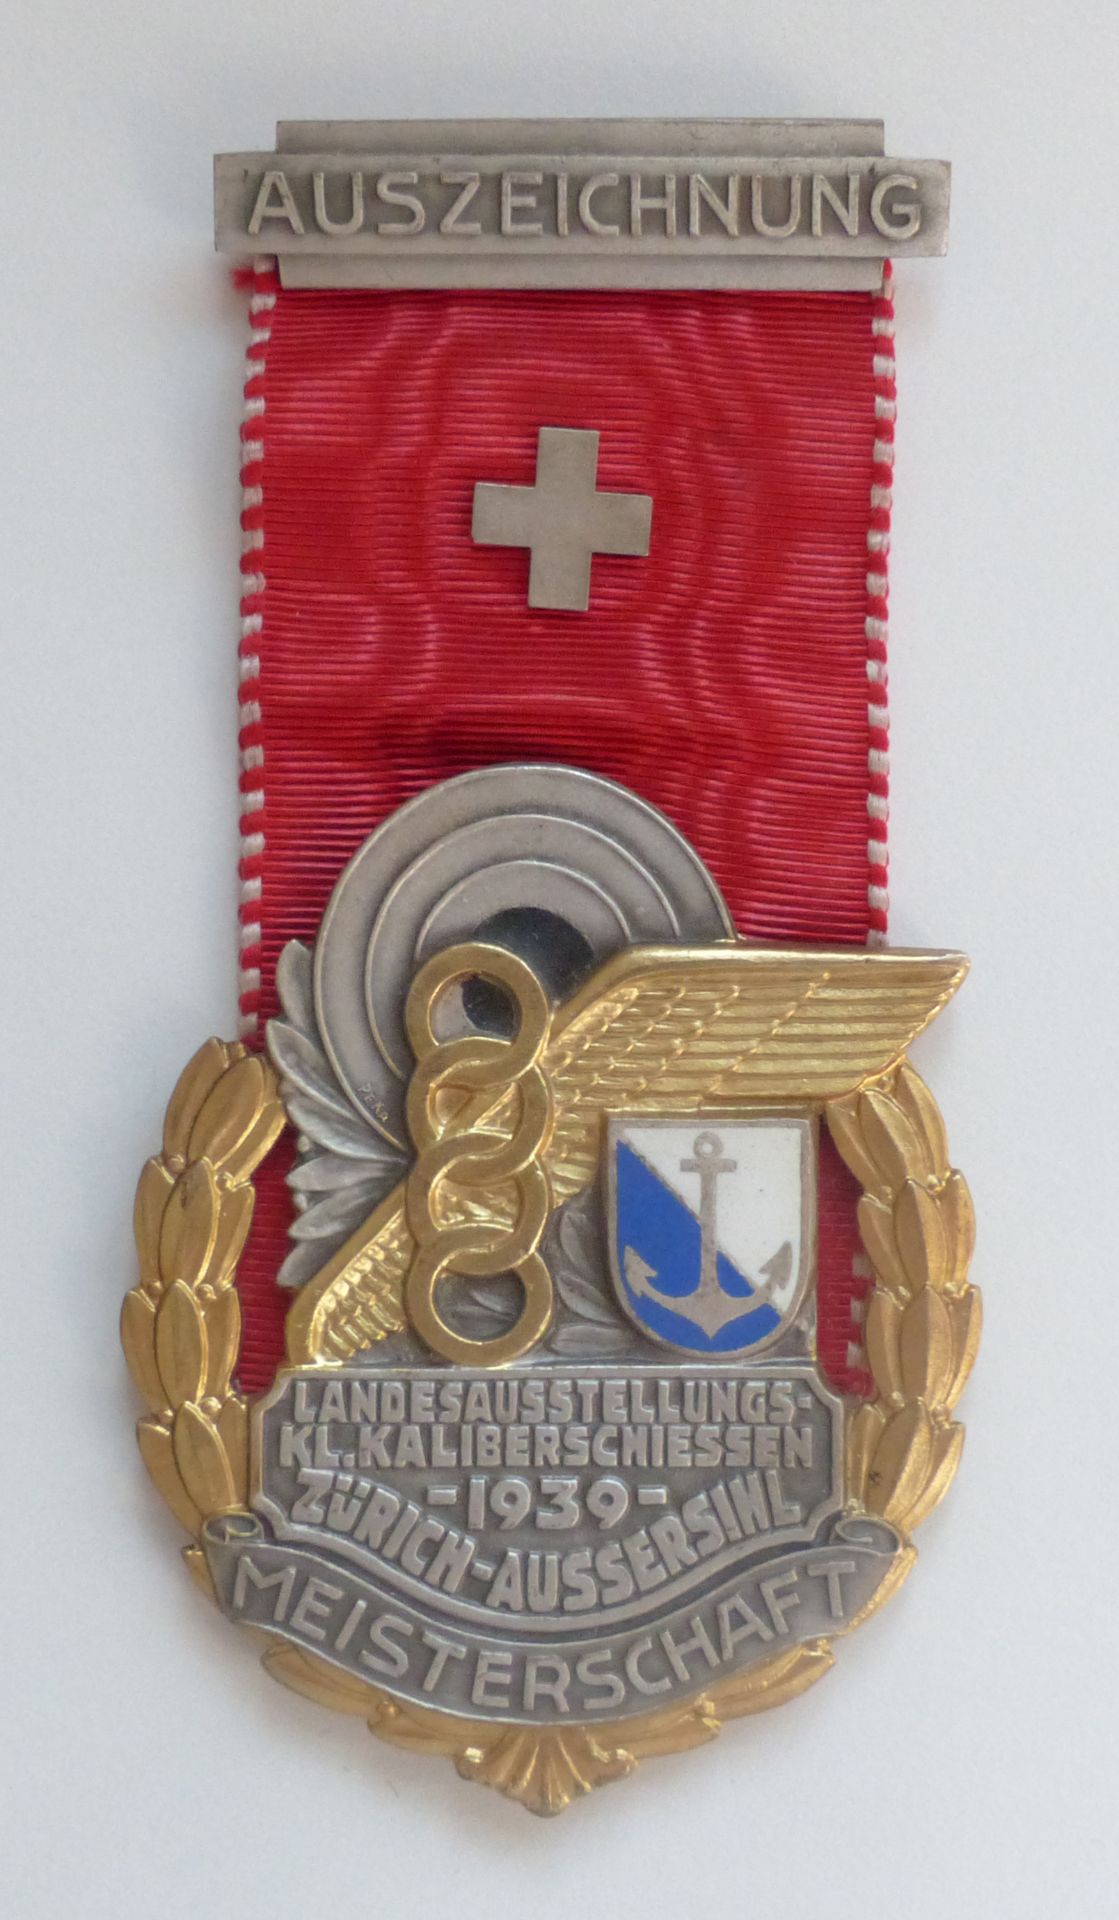 Landesaustellungs-Kleinkaliberschiessen 1939 Zürich-Aussersihl Auszeichnung